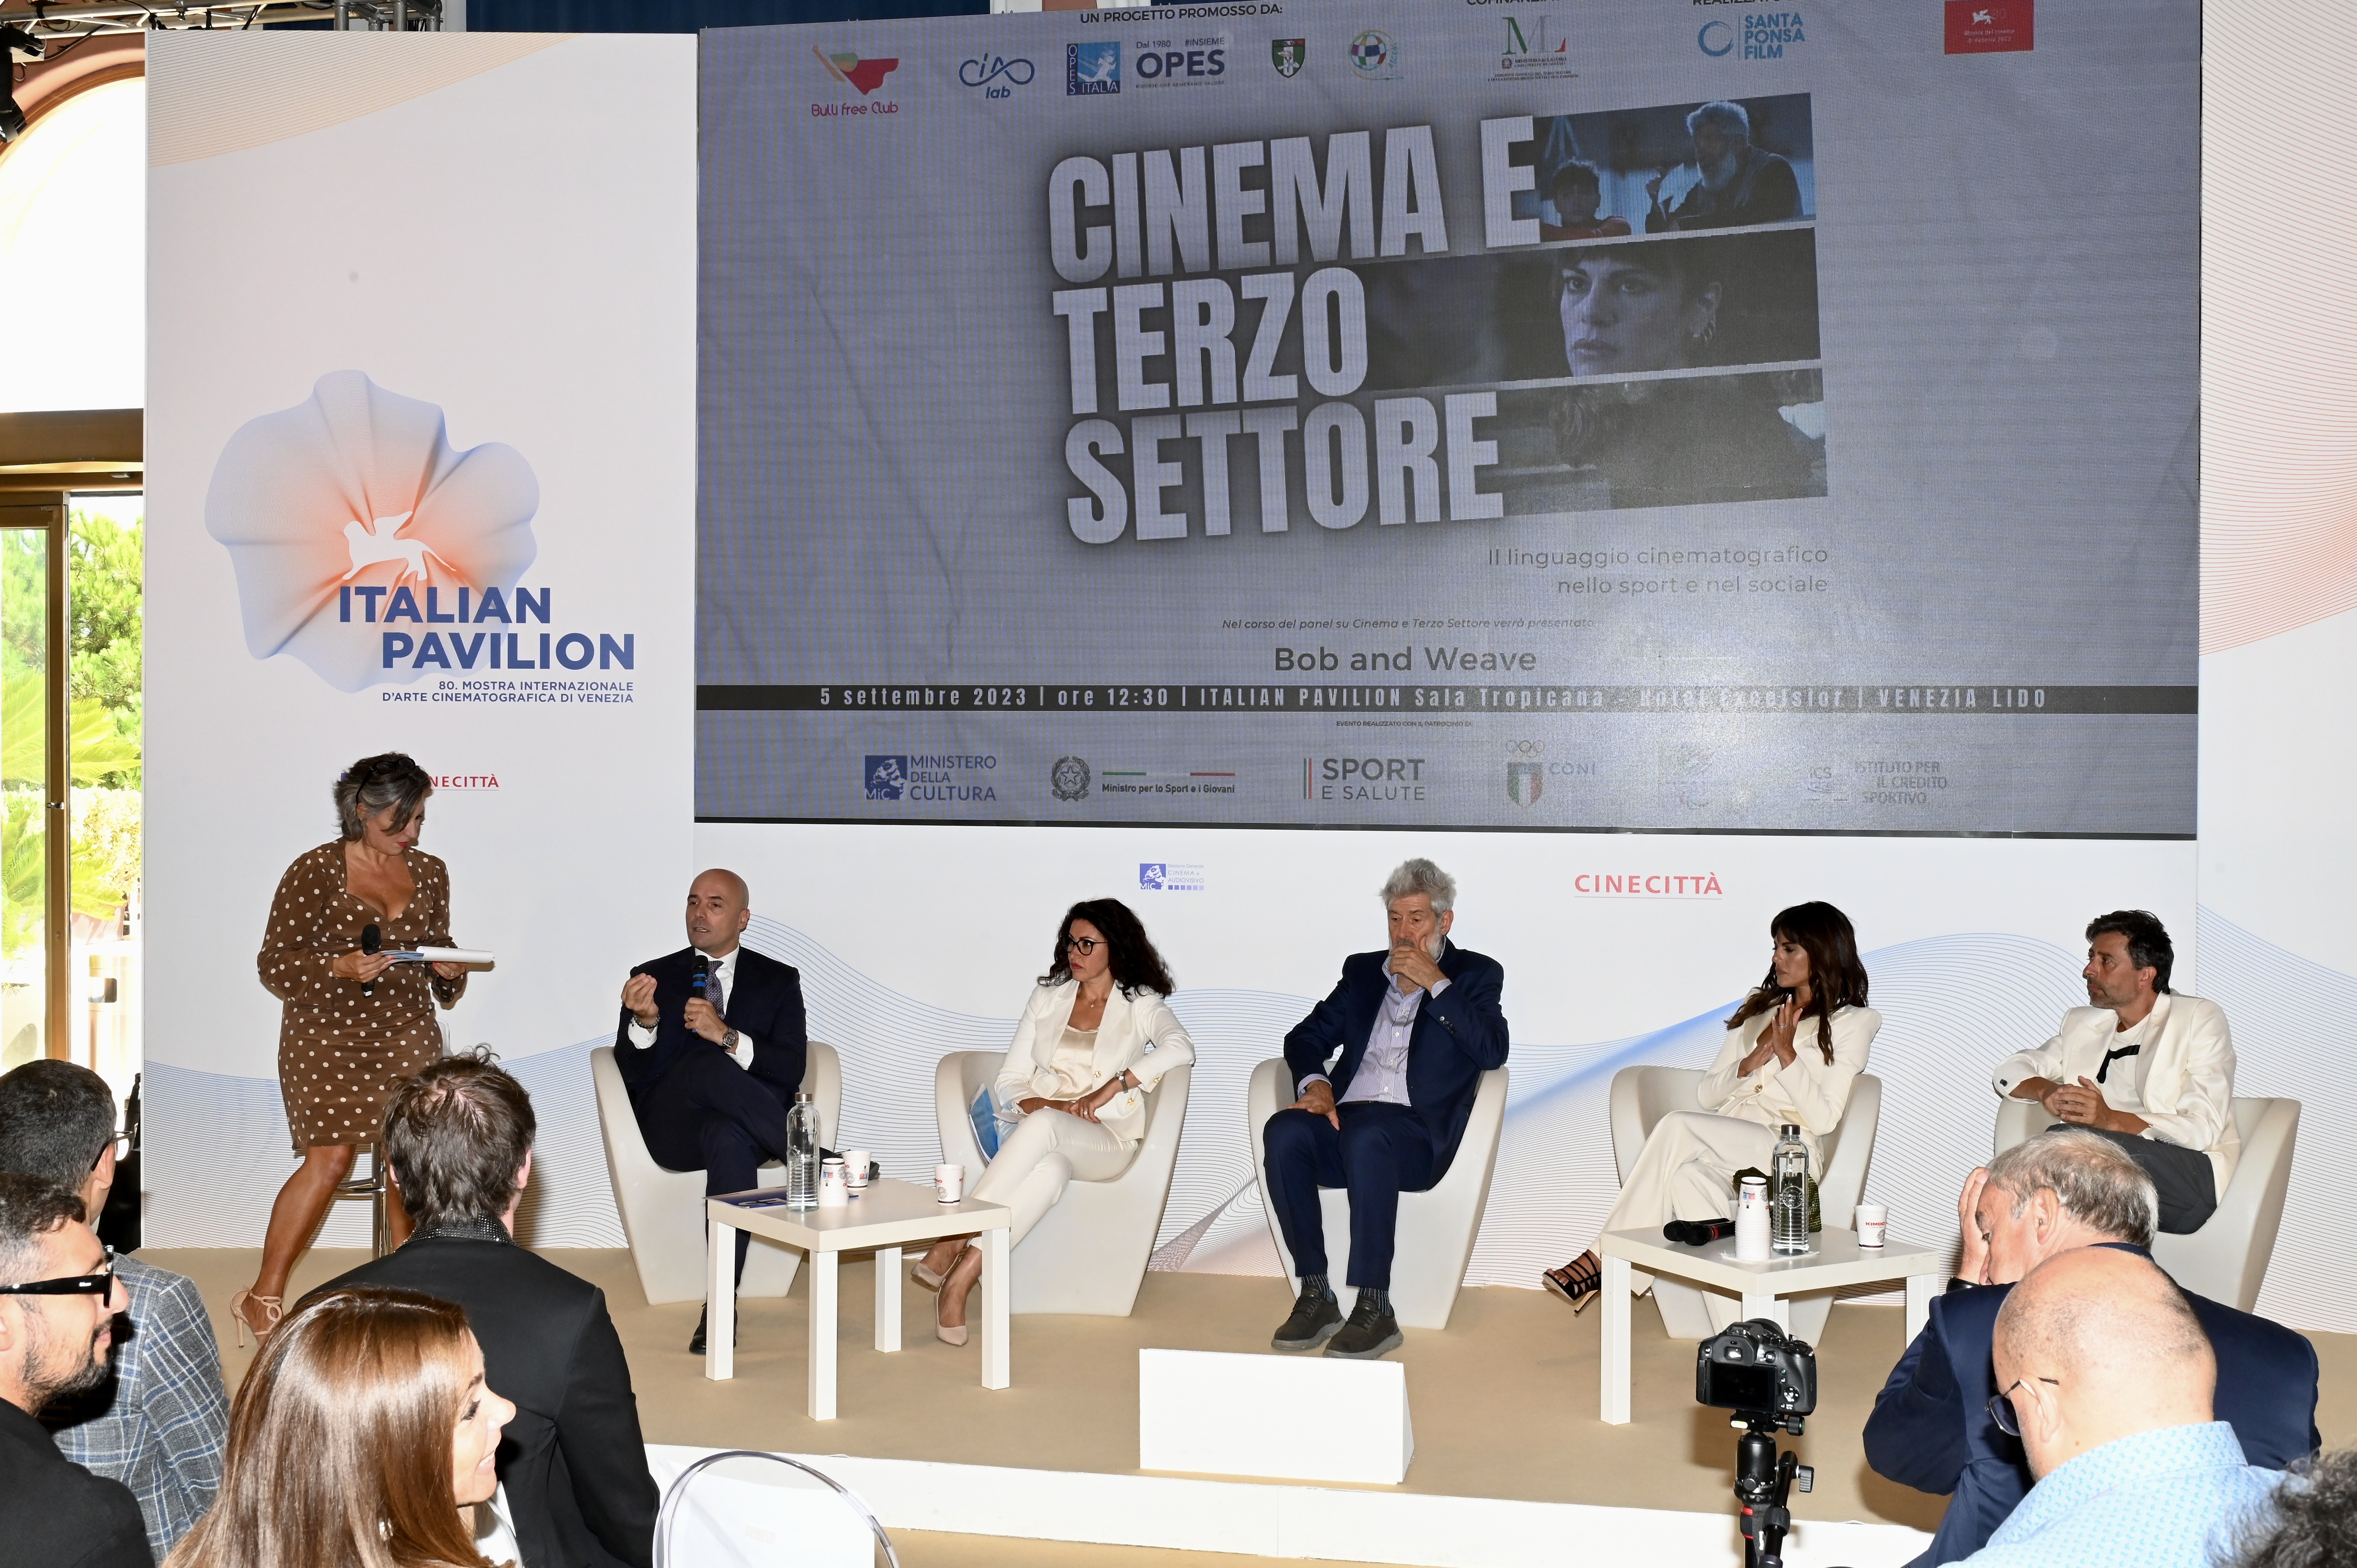 OPES a Venezia - panel su Cinema e Terzo Settore